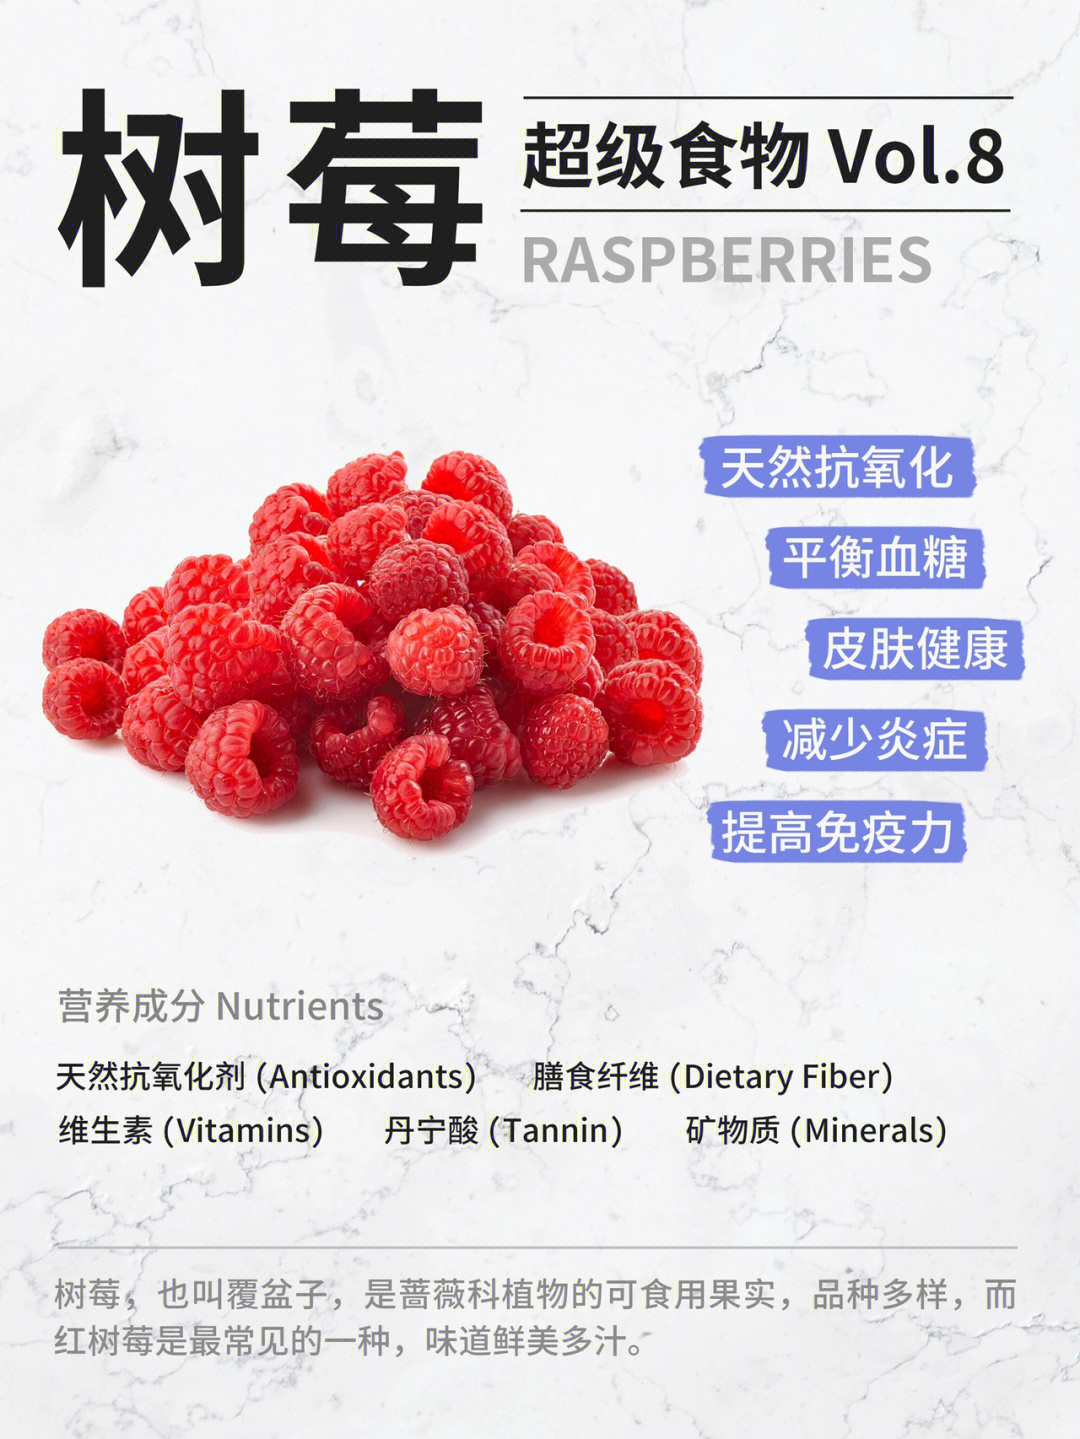 最好尽快吃掉,也可以选择市面上的冷冻树莓,营养价值差别不大,保质期